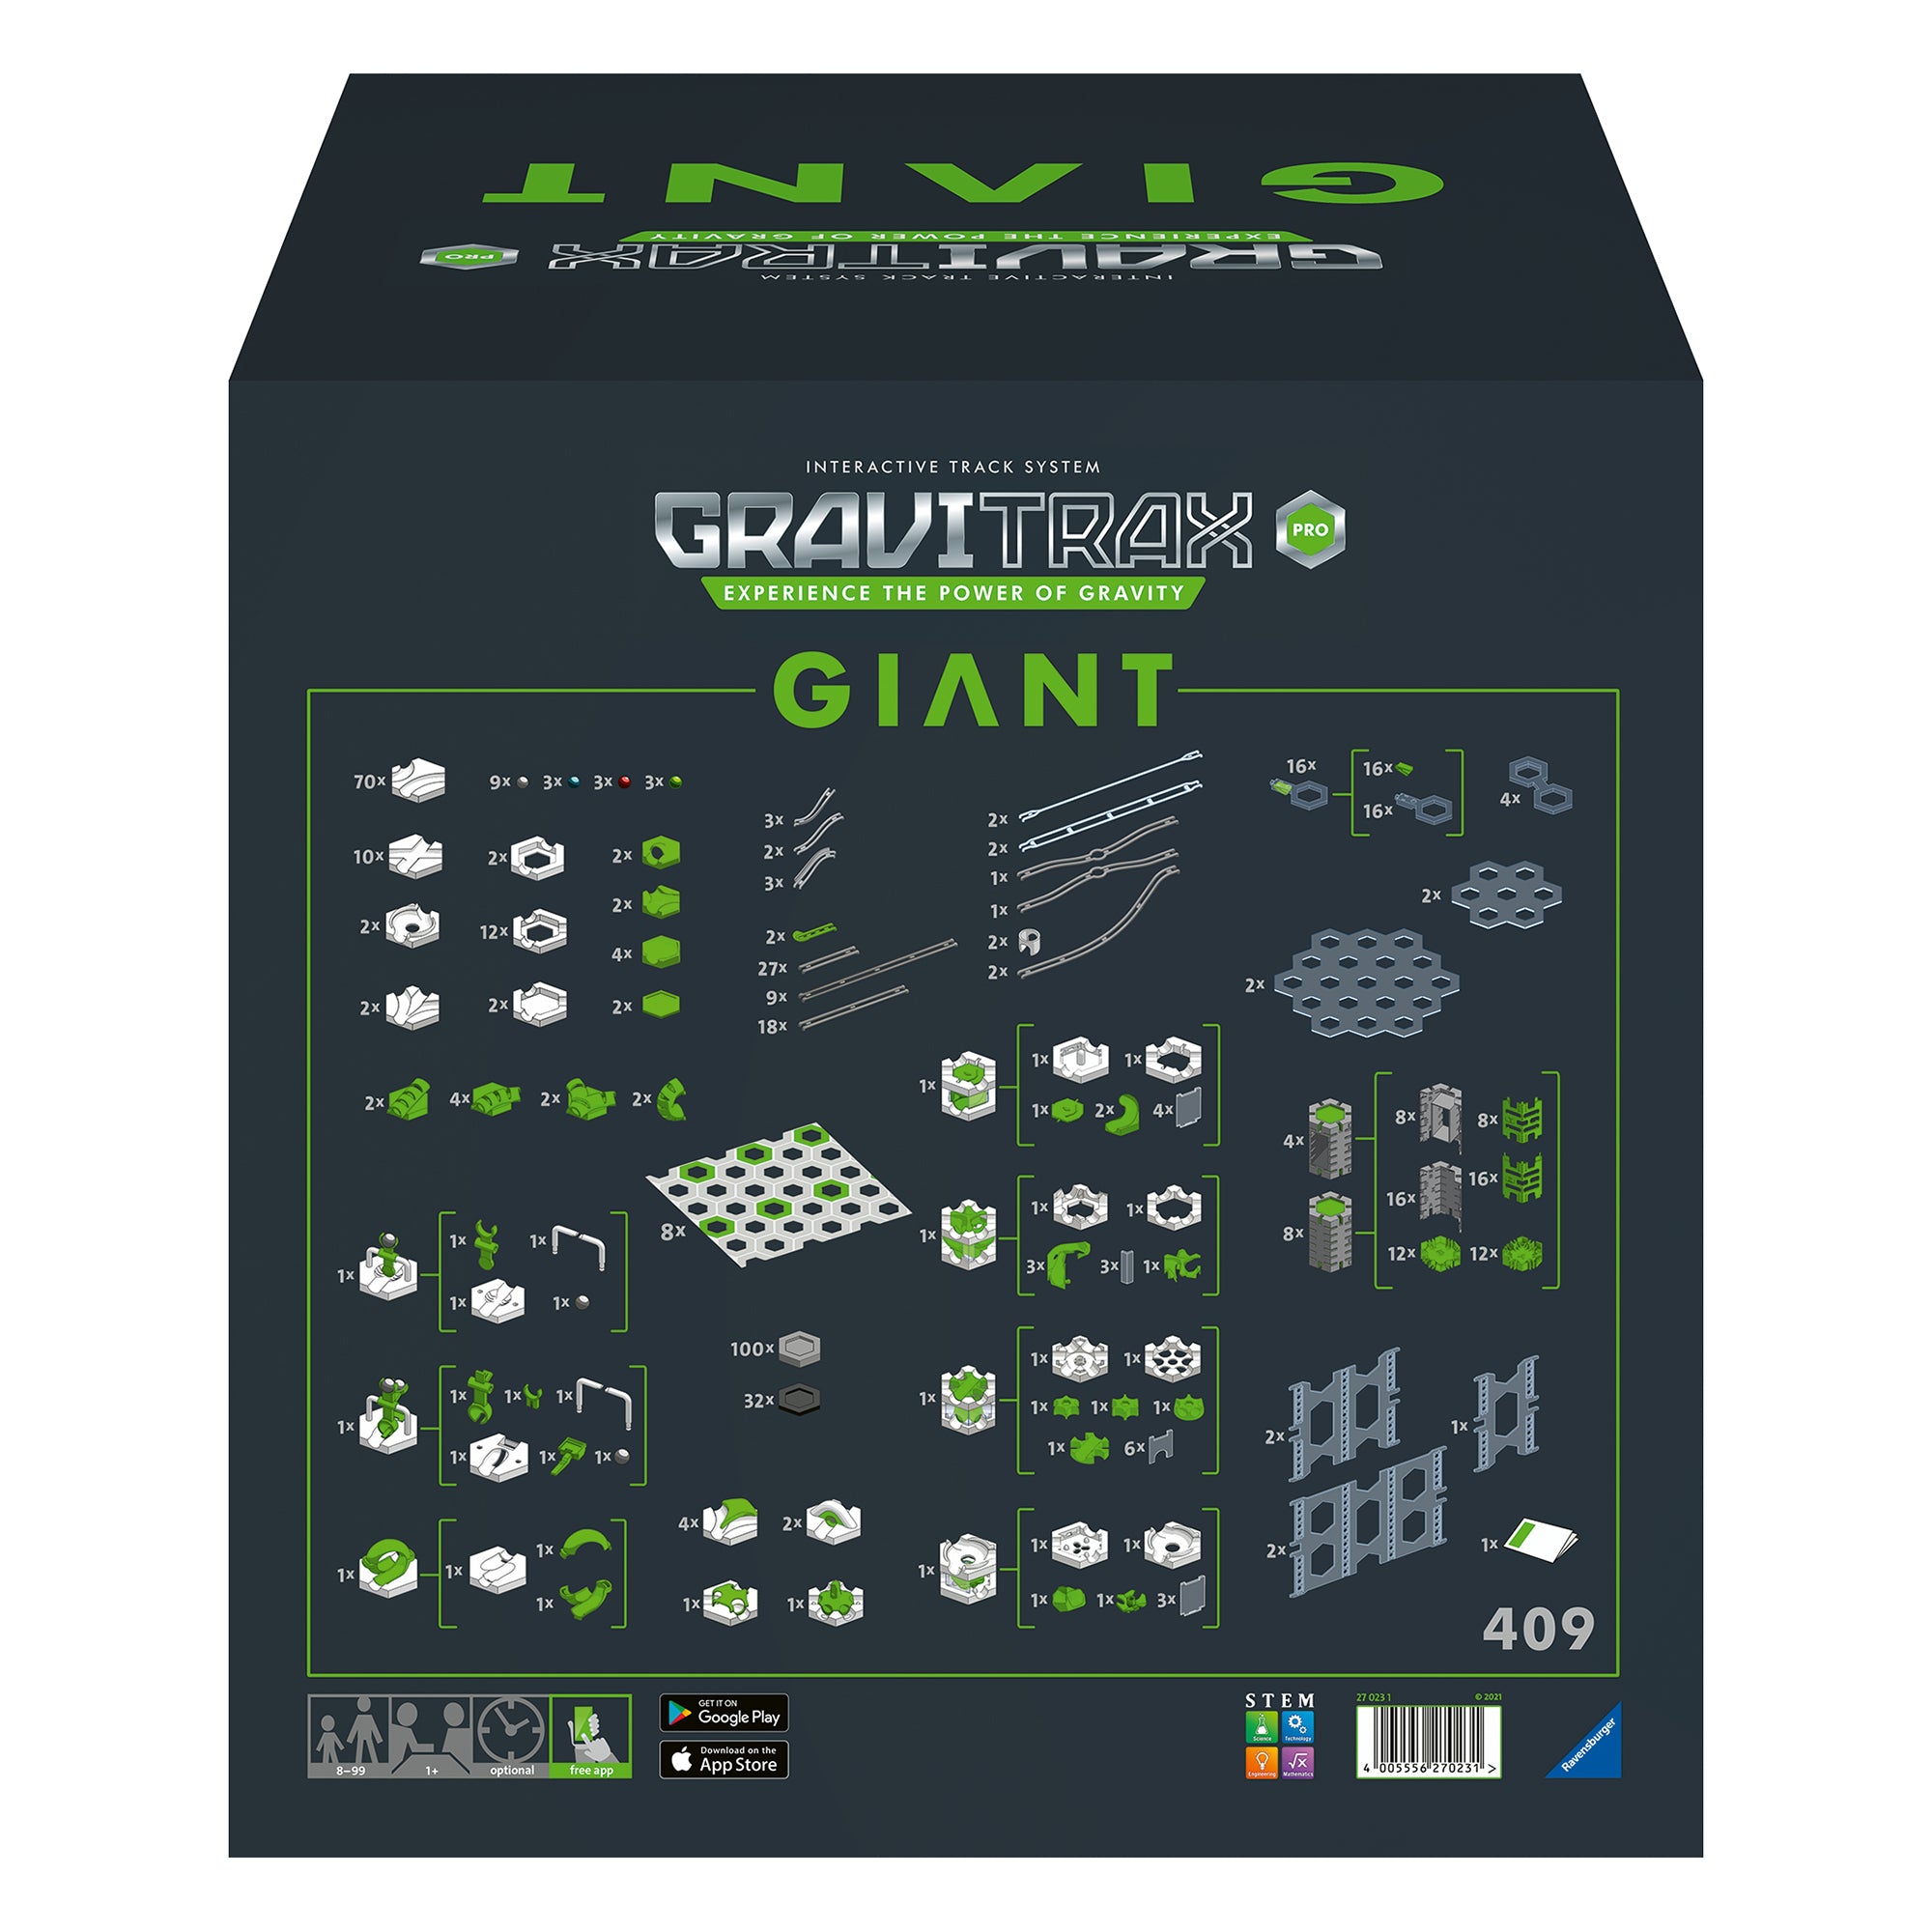 Gravitrax® - starter set pro vertical, jeux de constructions & maquettes